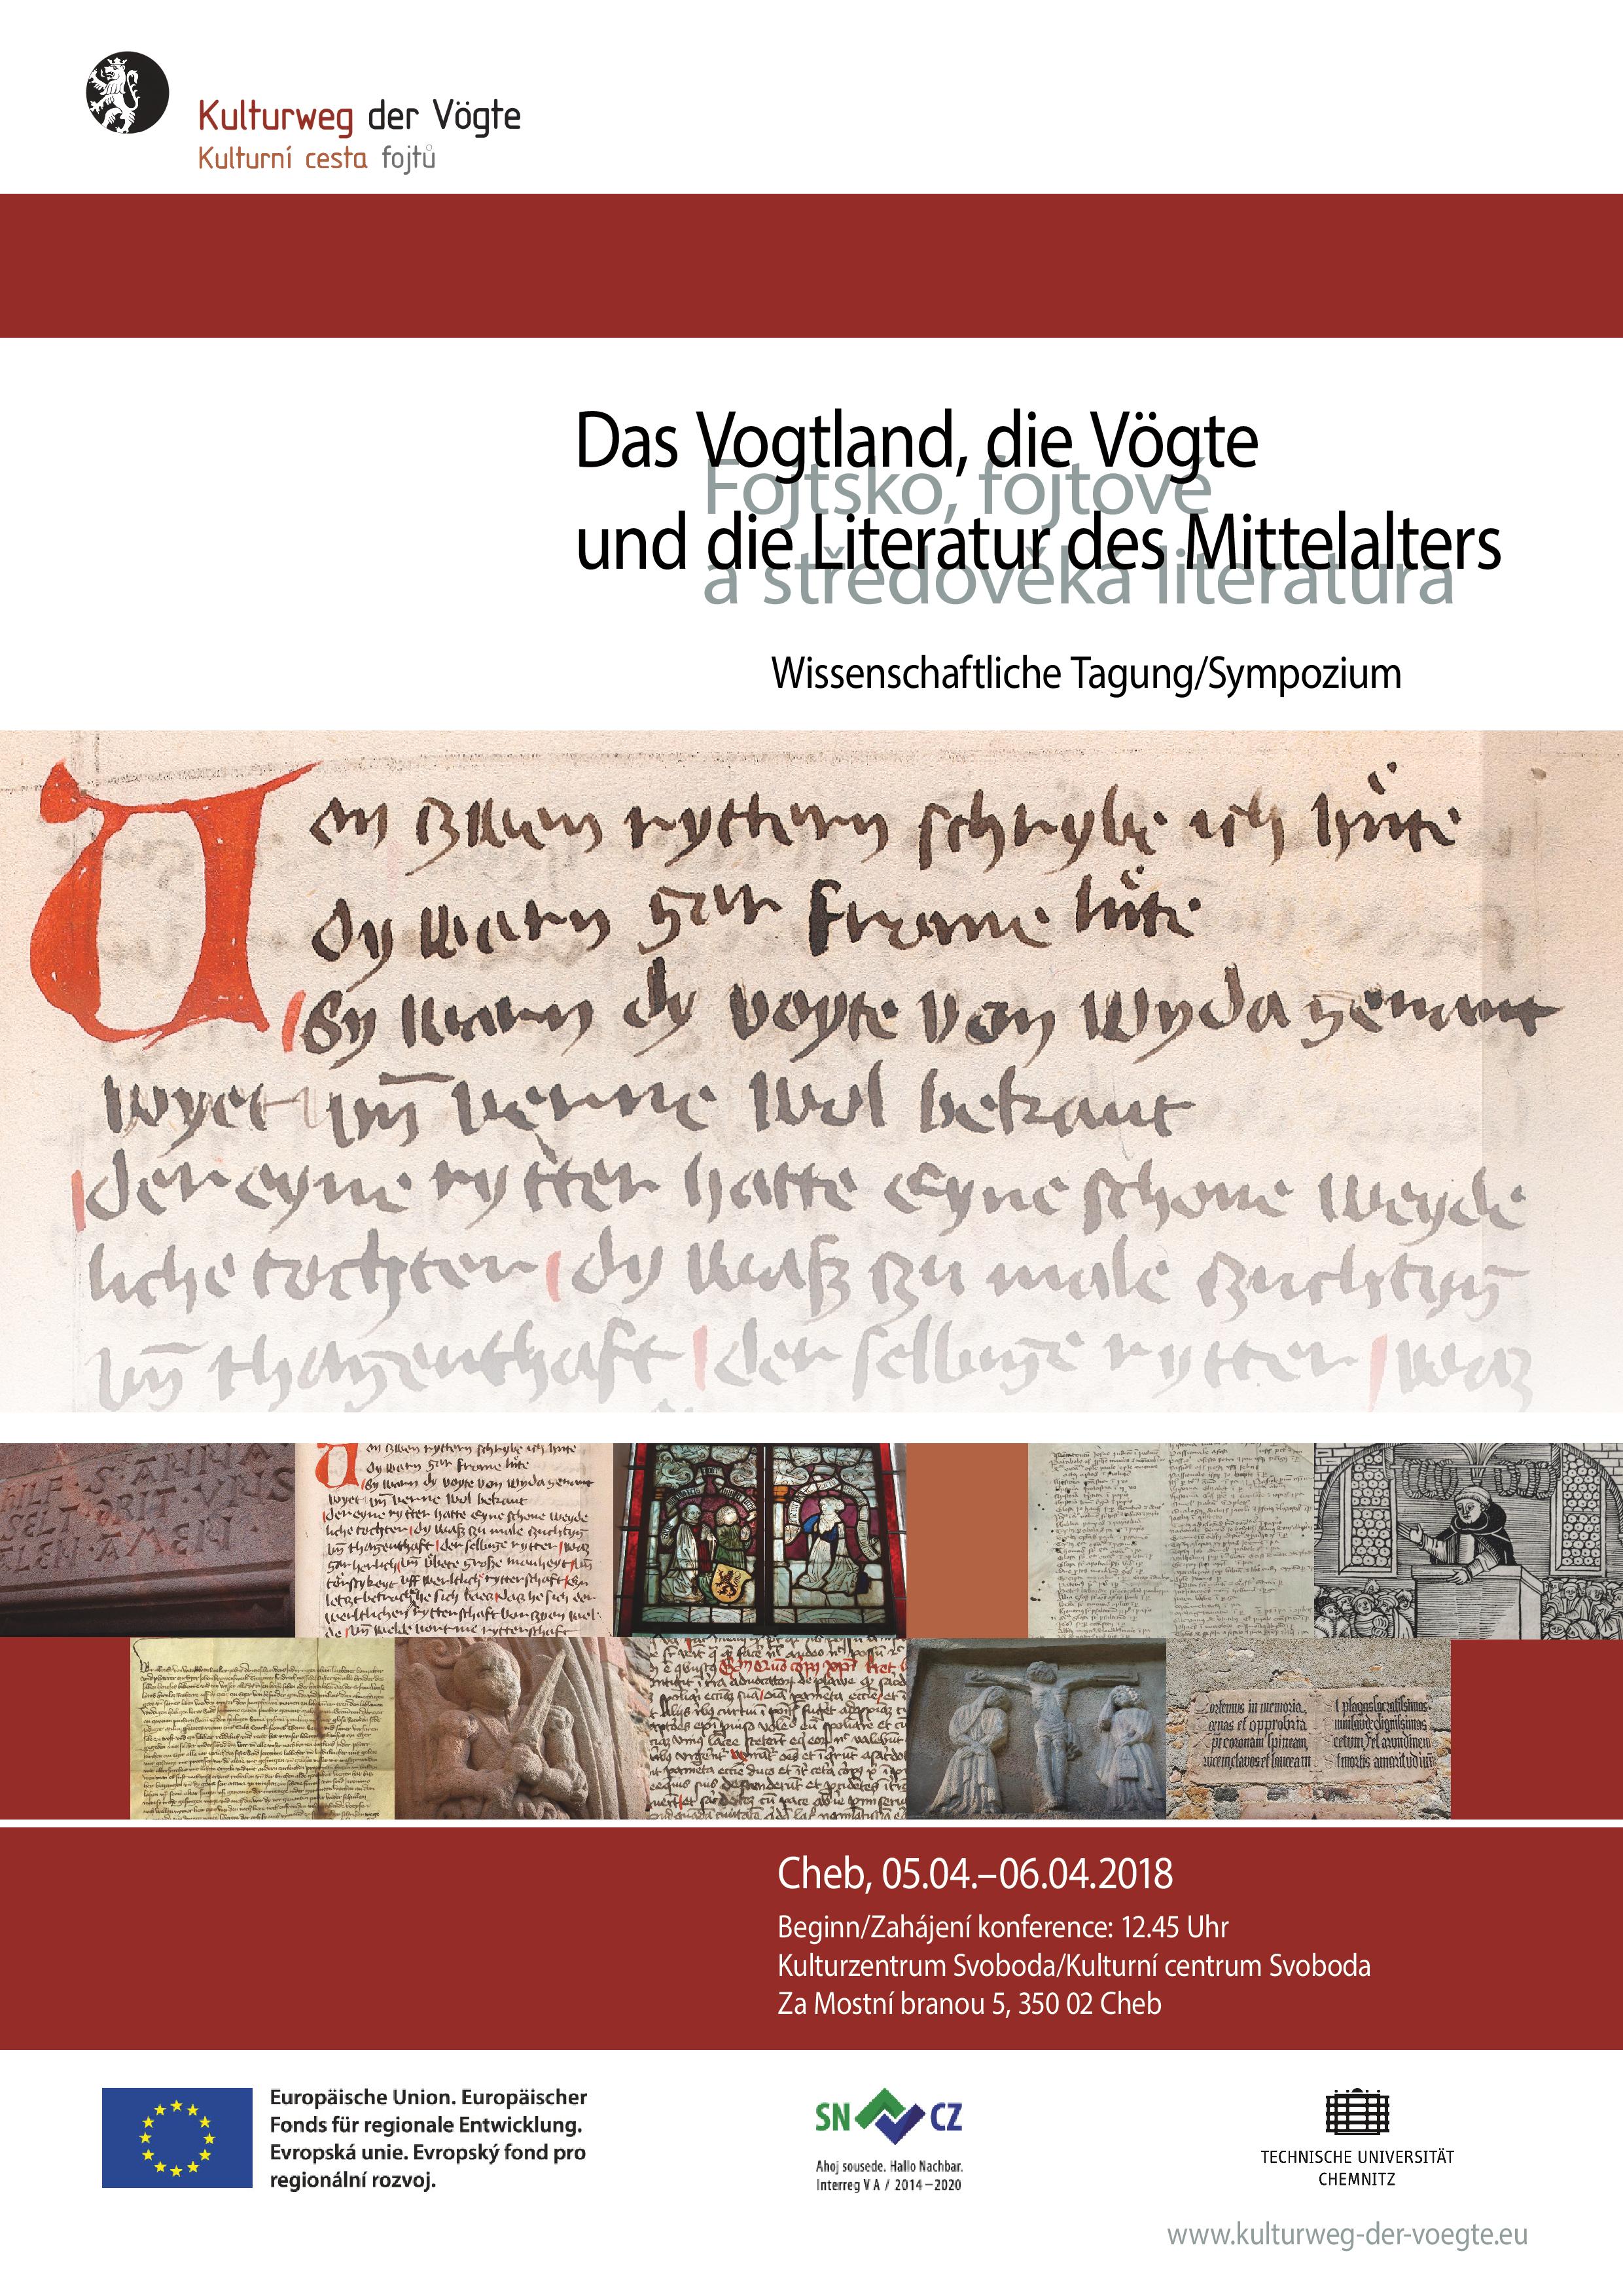 Plakat "Das Vogtland, die Vögte und die Literatur des Mittelalters"